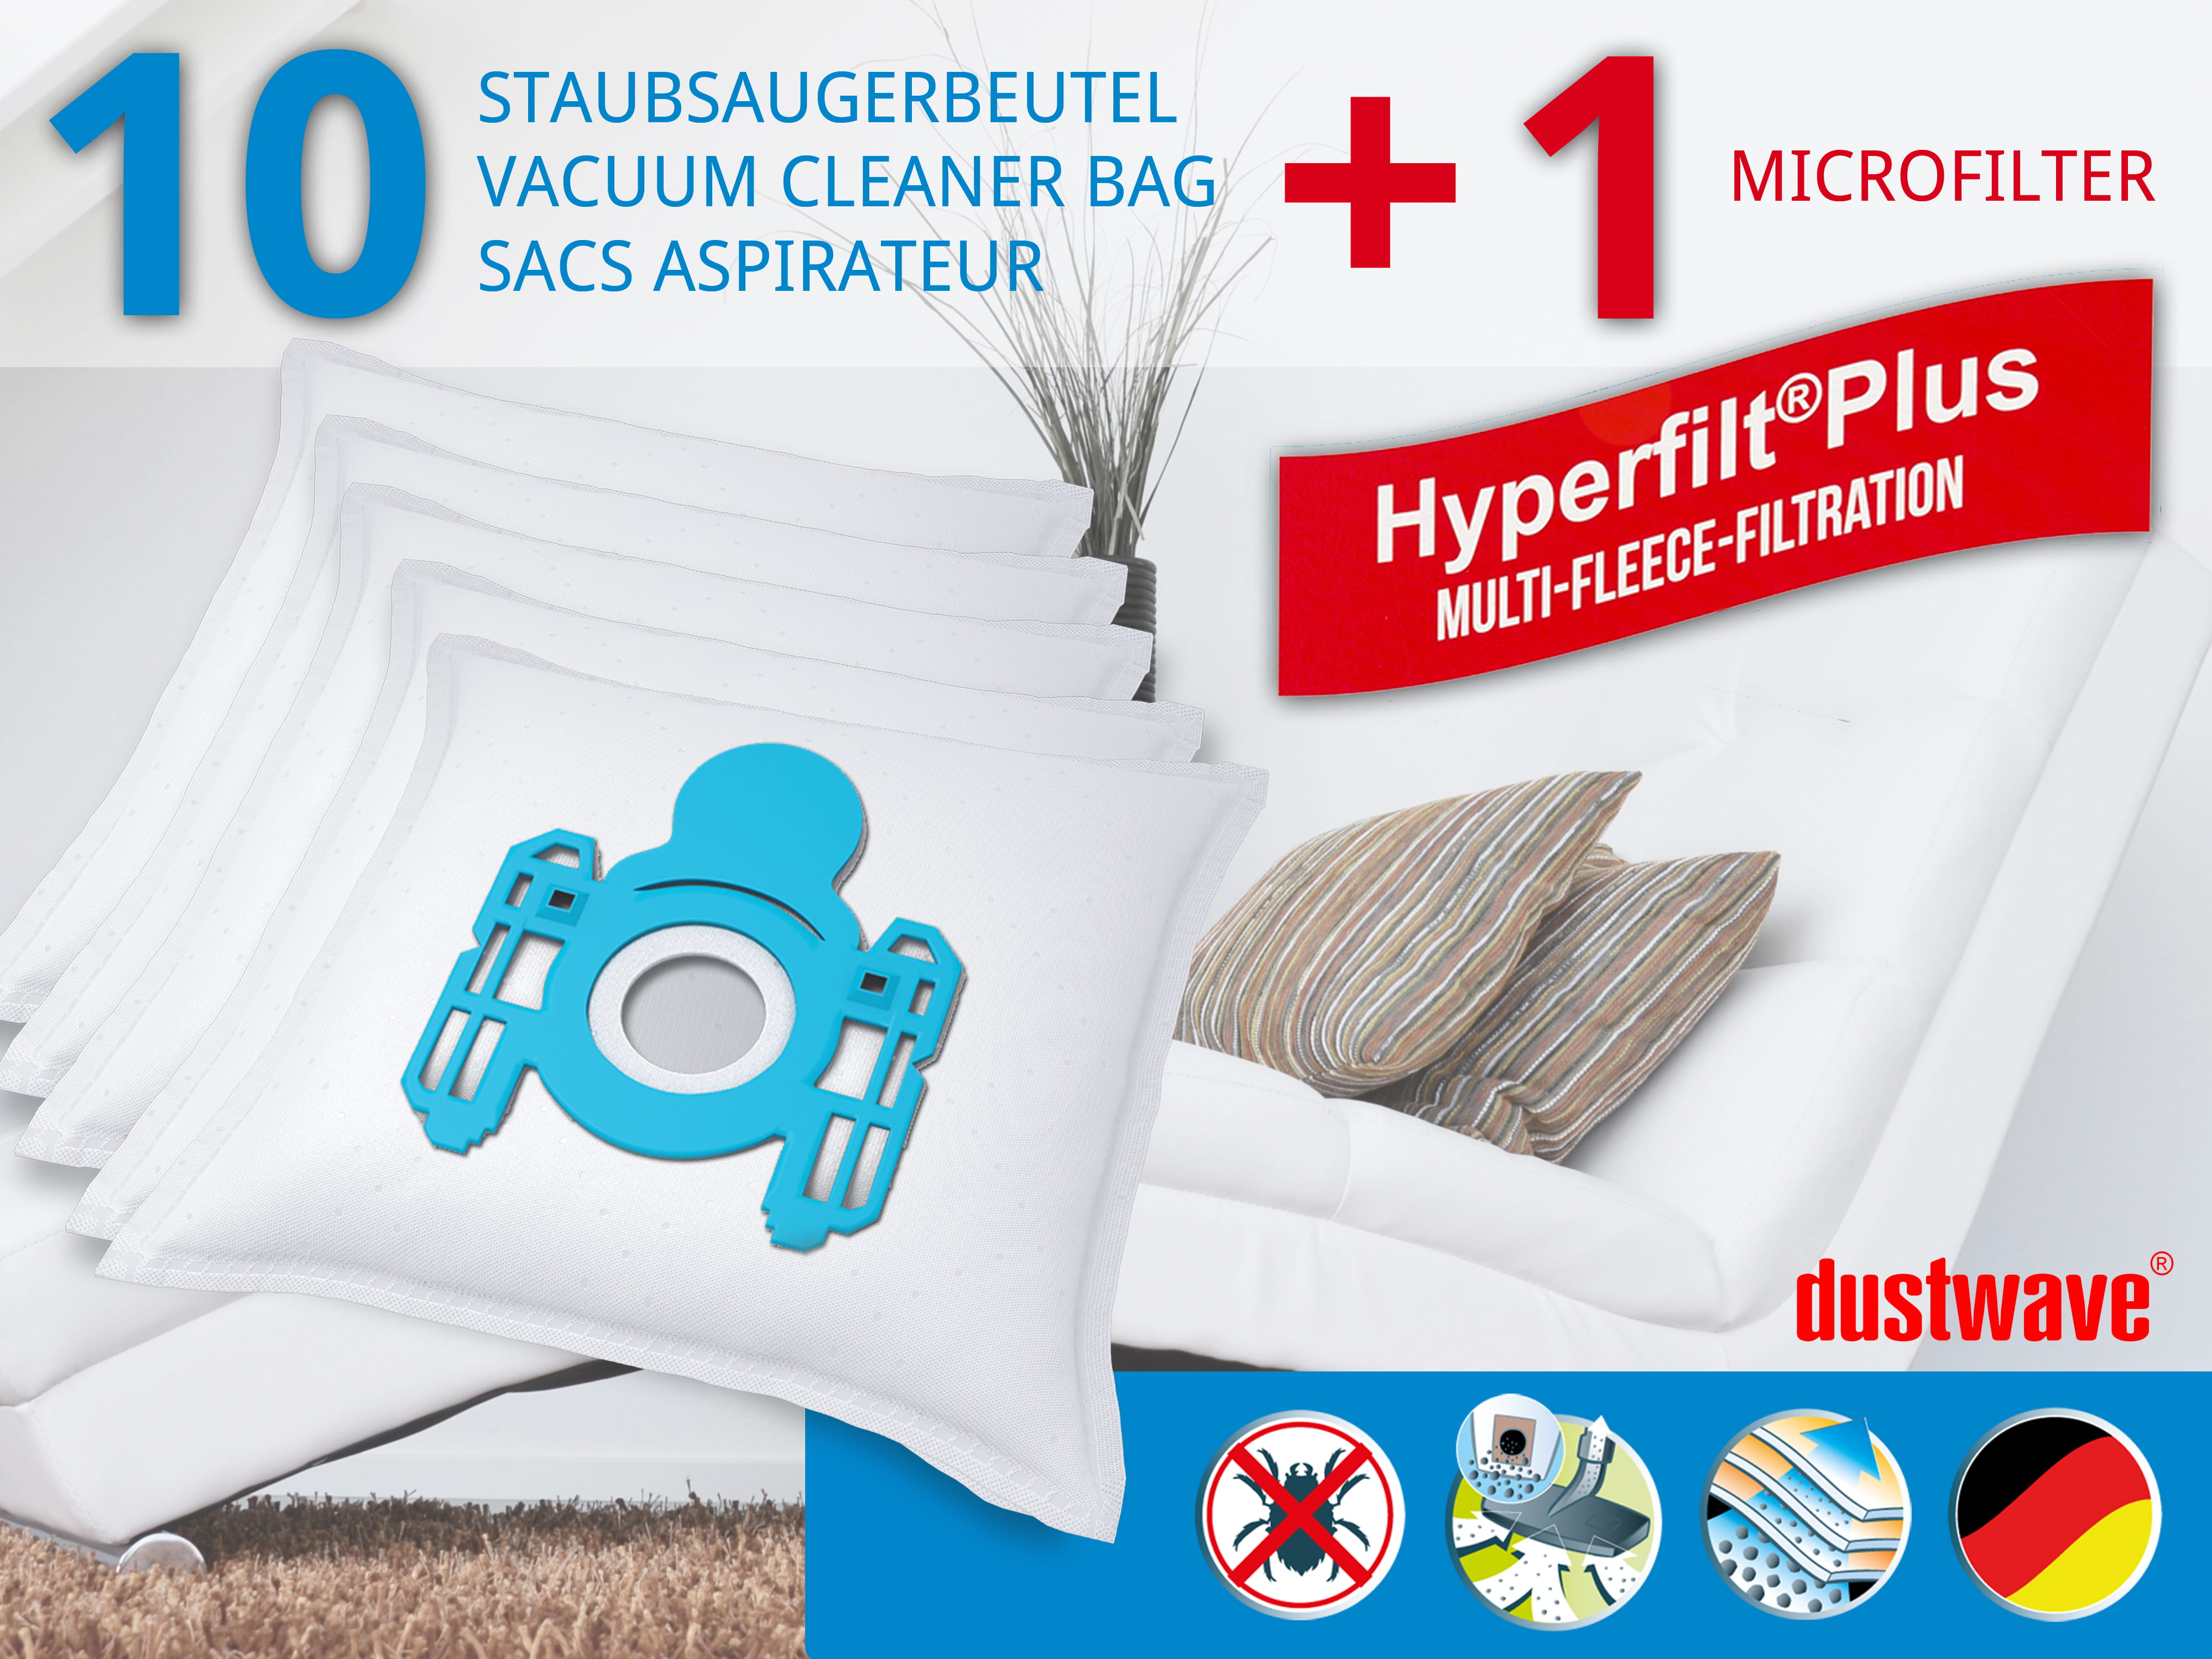 Dustwave® 10 Staubsaugerbeutel für AEG Vampyr 51700 - hocheffizient, mehrlagiges Mikrovlies mit Hygieneverschluss - Made in Germany